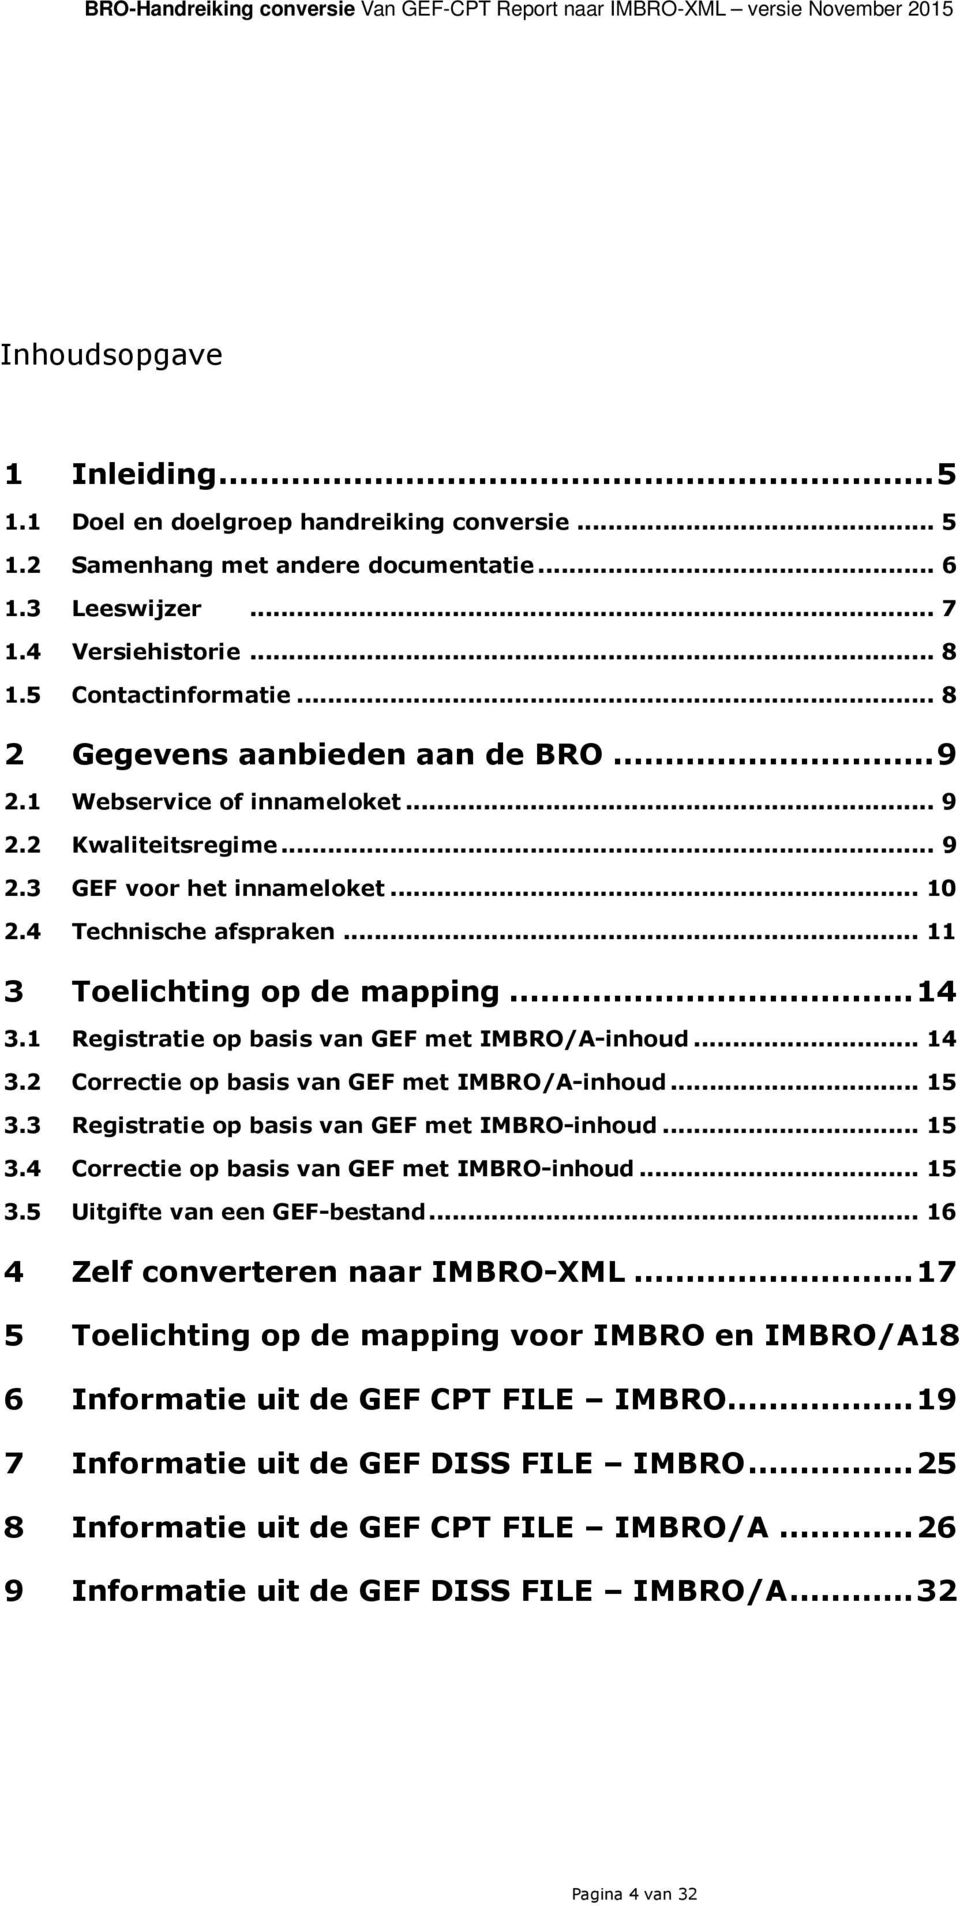 .. 10 2.4 Technische afspraken... 11 3 Toelichting op de mapping... 14 3.1 Registratie op basis van GEF met IMBRO/A-inhoud... 14 3.2 Correctie op basis van GEF met IMBRO/A-inhoud... 15 3.